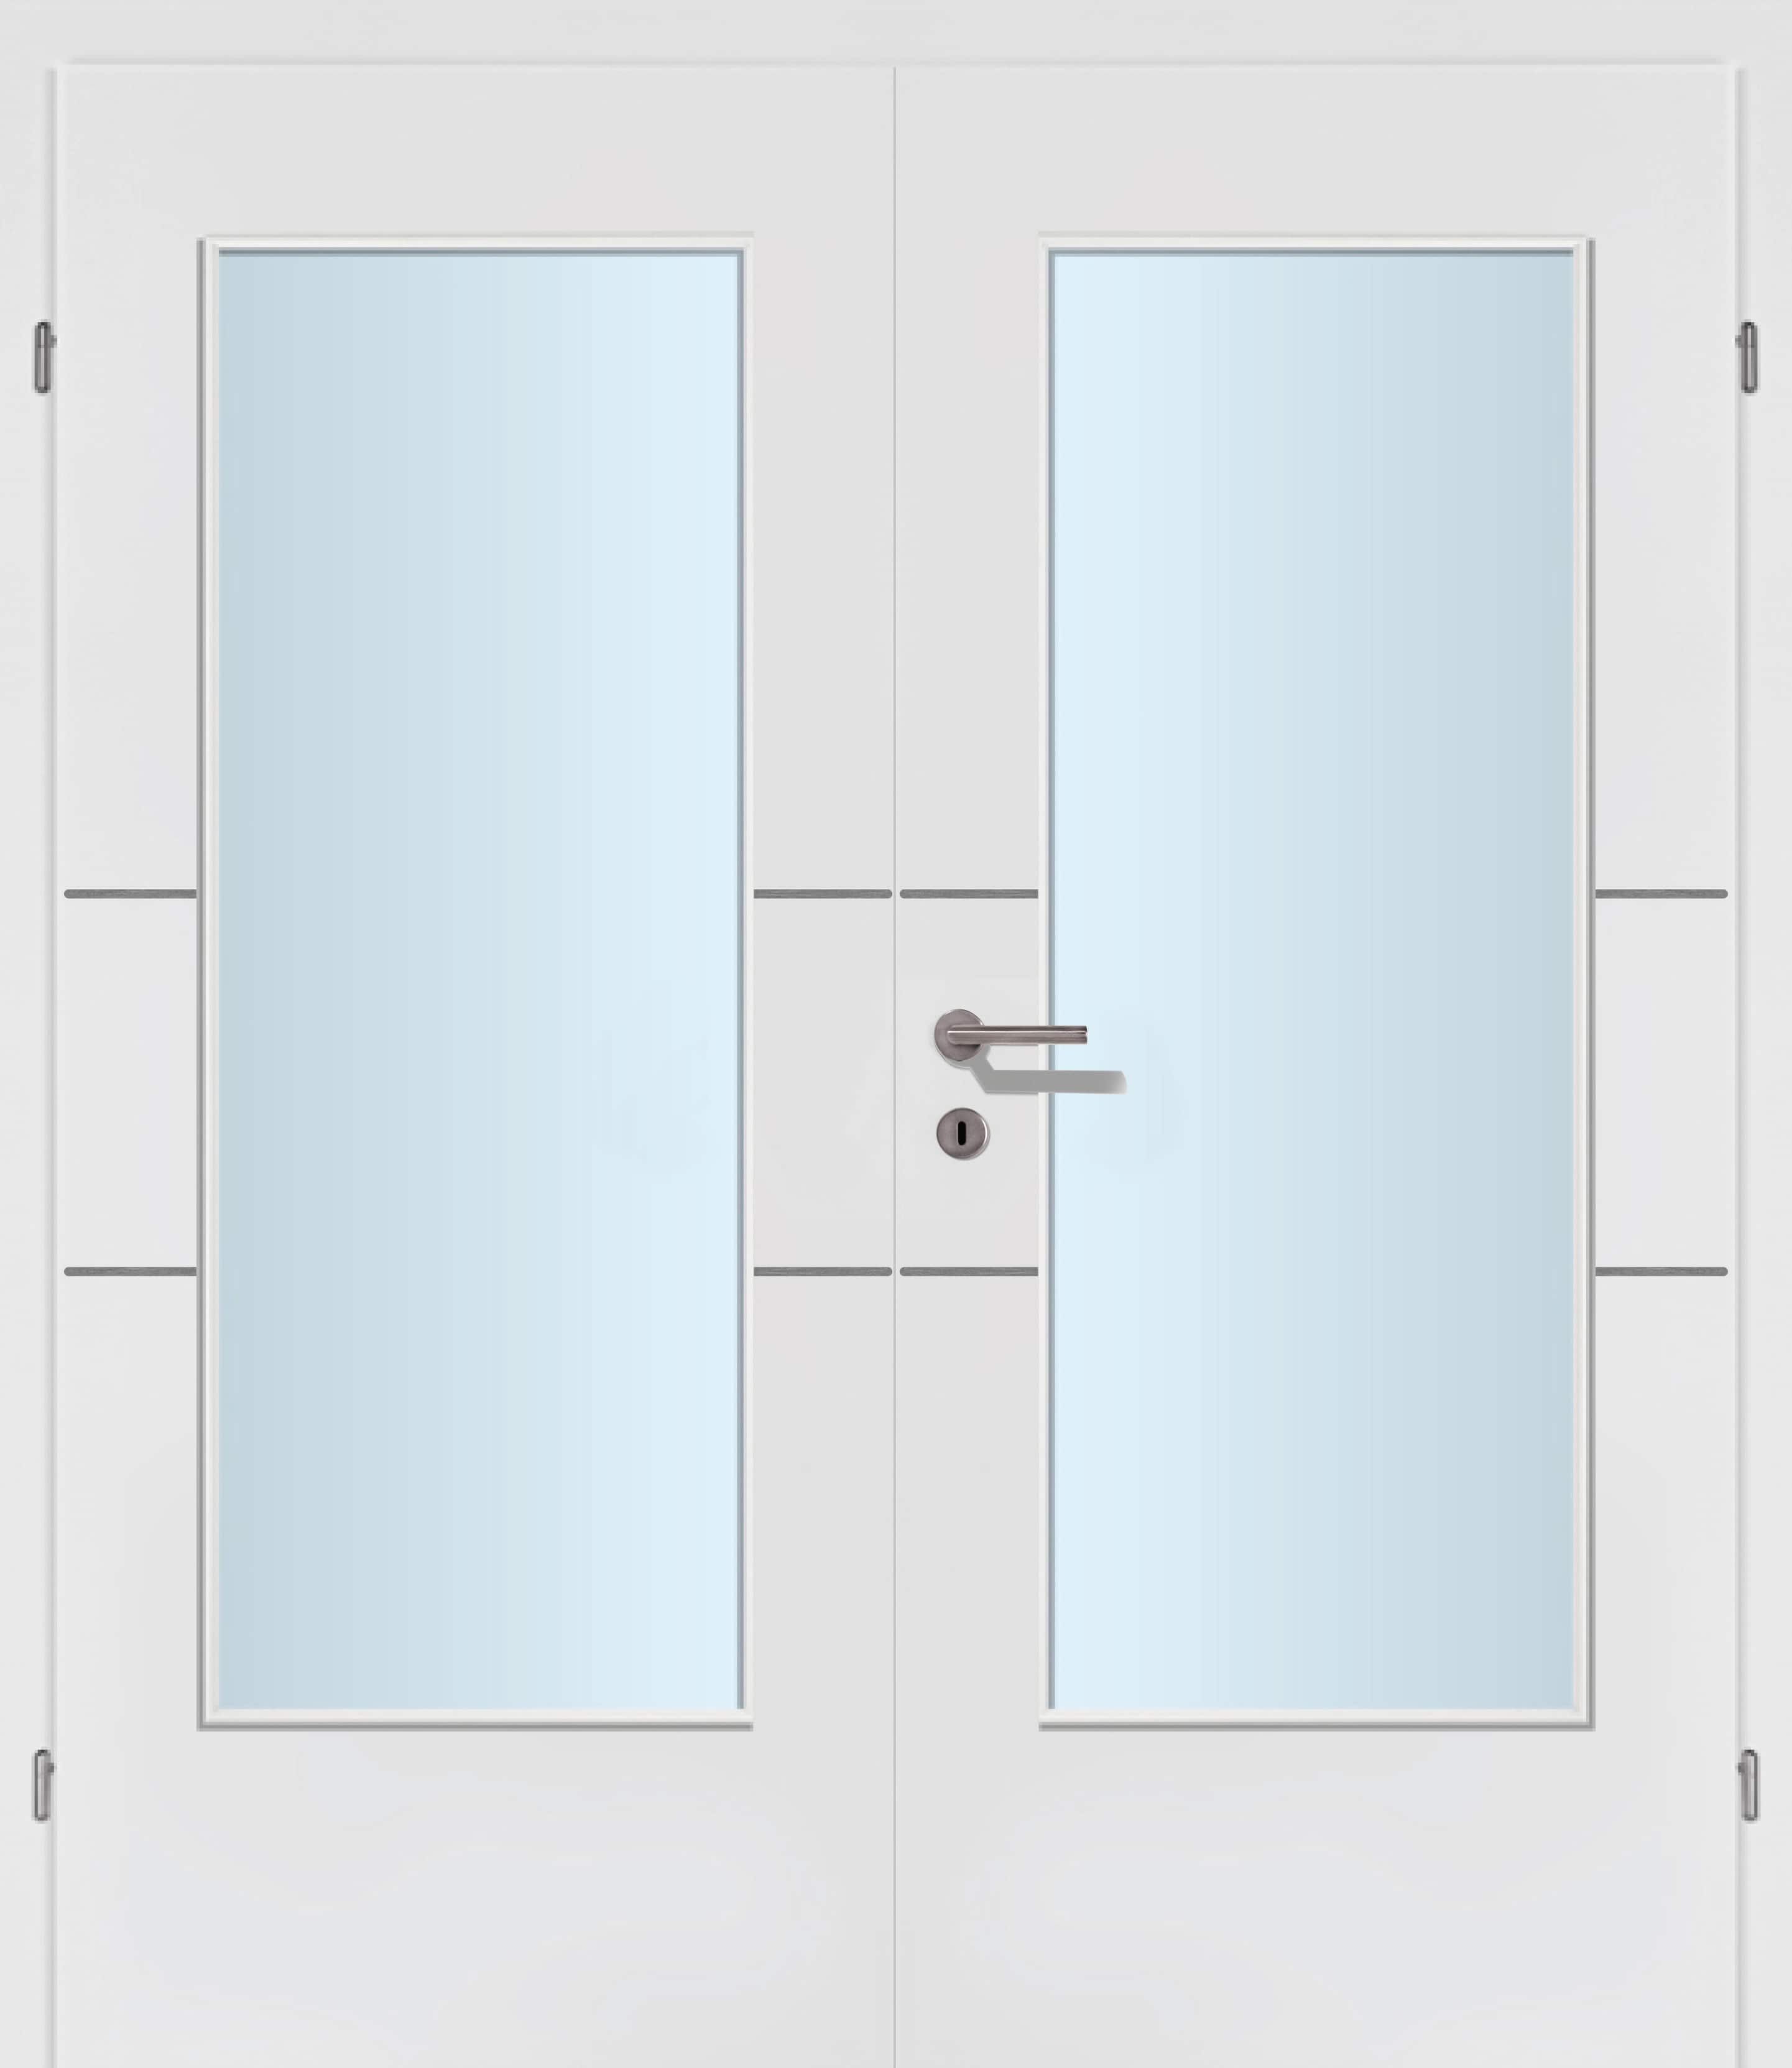 Selektion T41 Alu Effekt Lisenen weiss Innentür Inkl. Zarge (Türrahmen) Doppeltüre Inkl. Glaslichte C